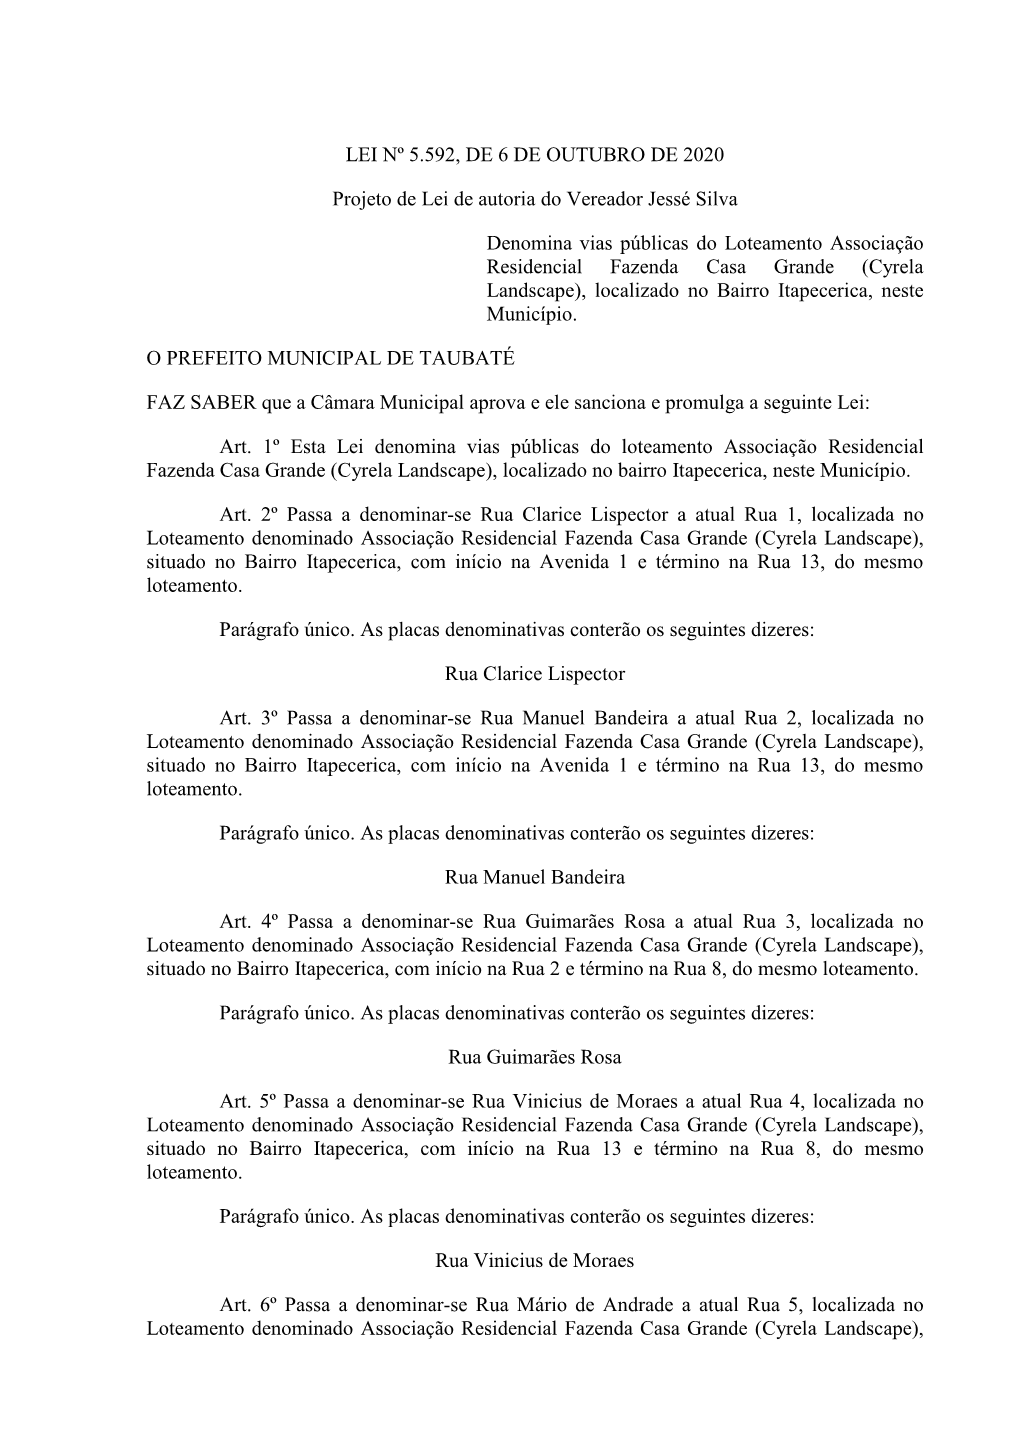 LEI Nº 5.592, DE 6 DE OUTUBRO DE 2020 Projeto De Lei De Autoria Do